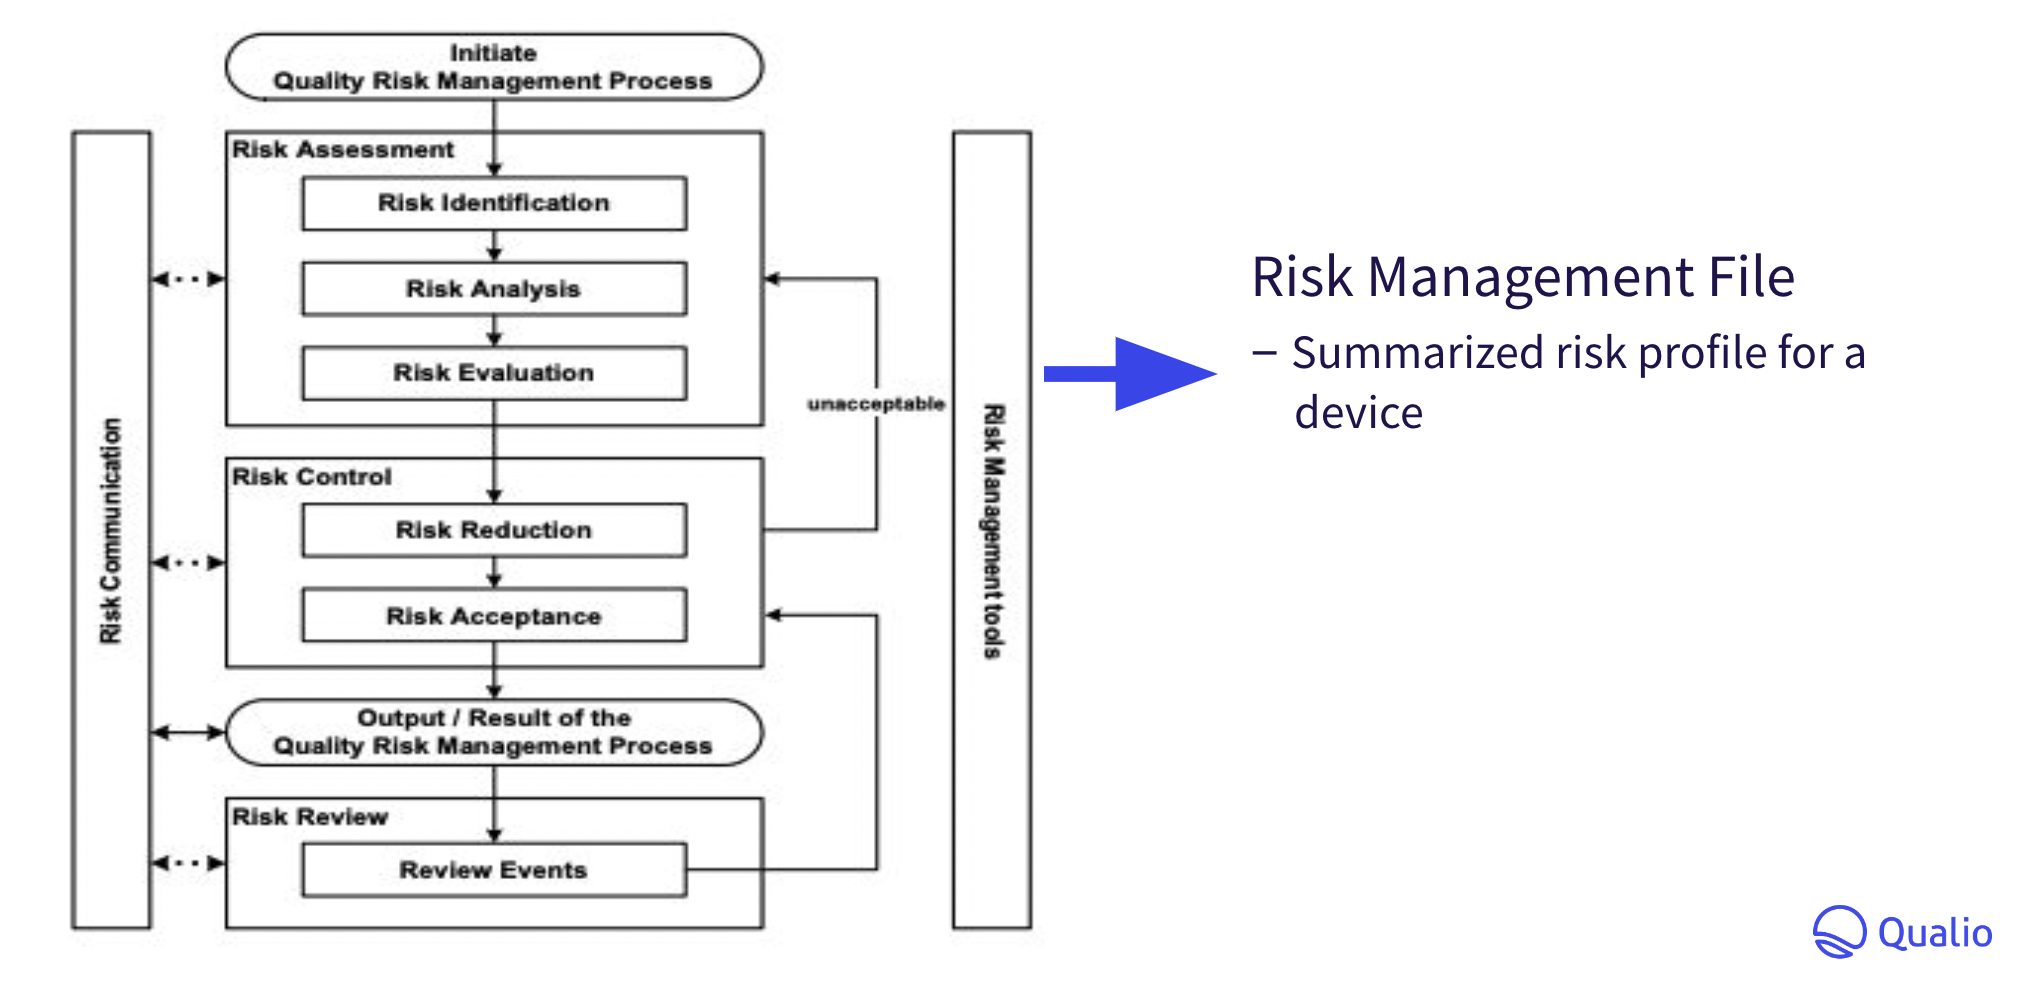 IVDR risk management